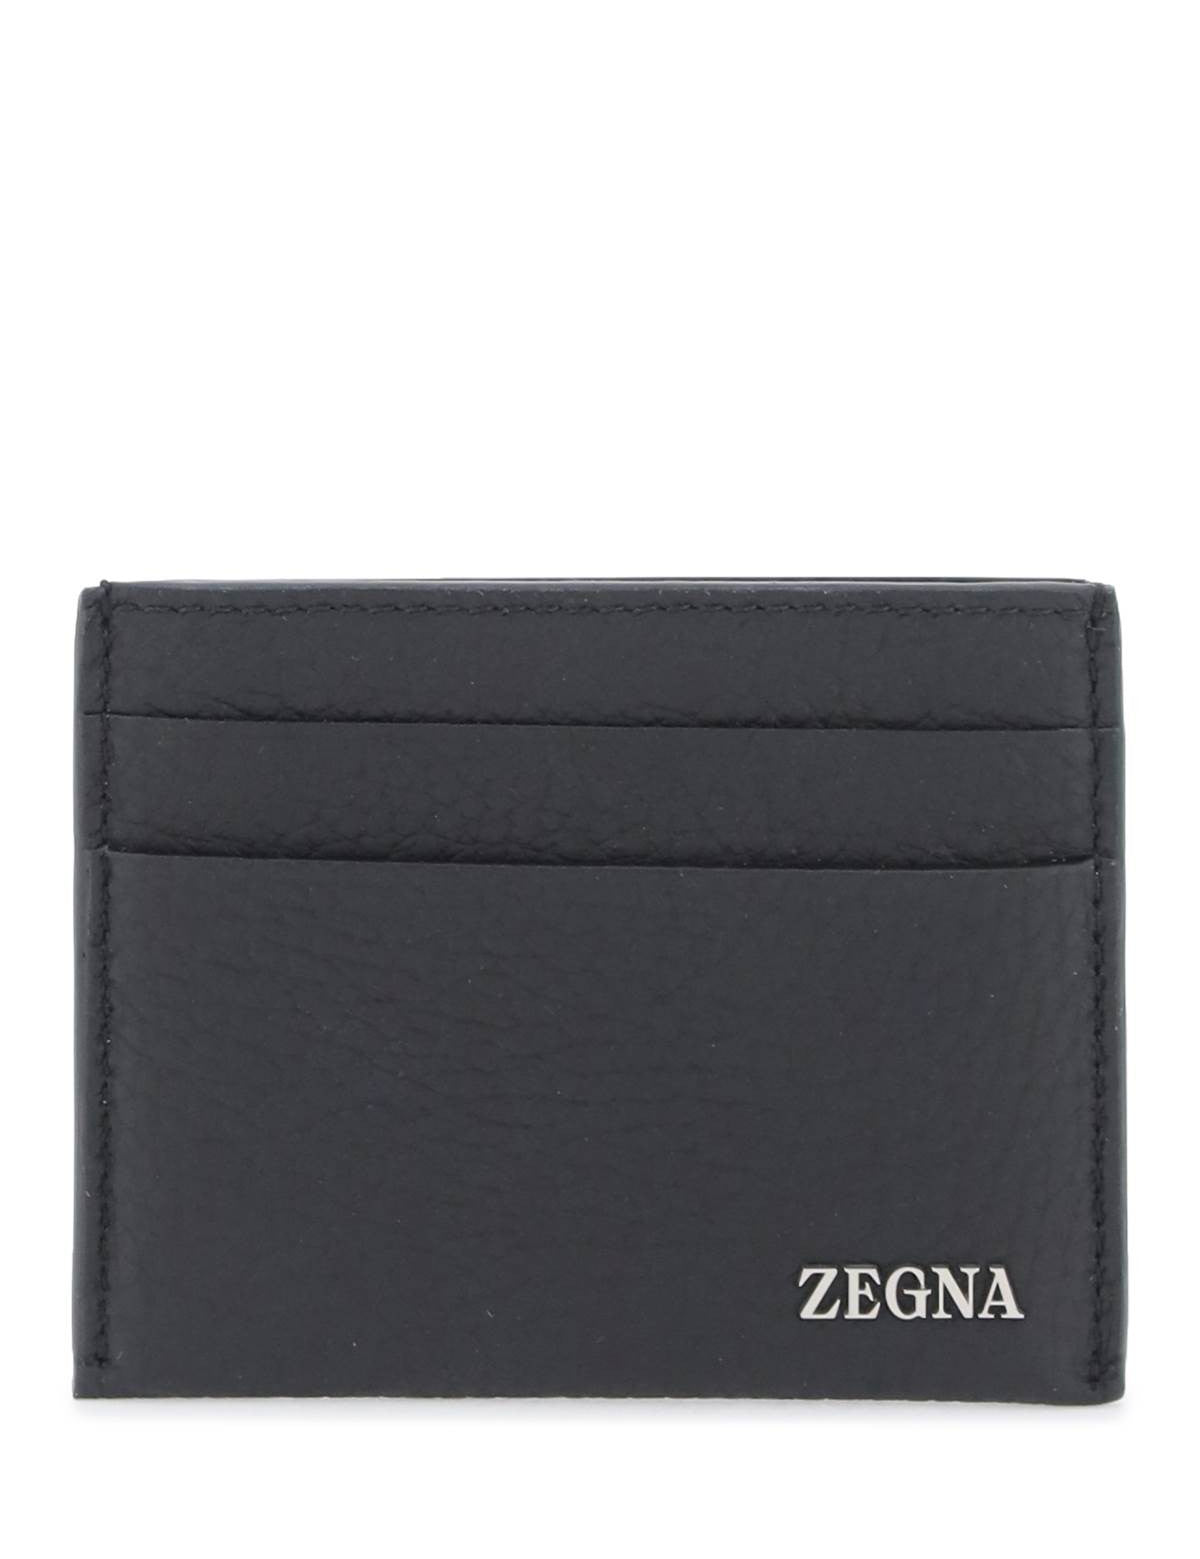 zegna-leather-cardholder.jpg